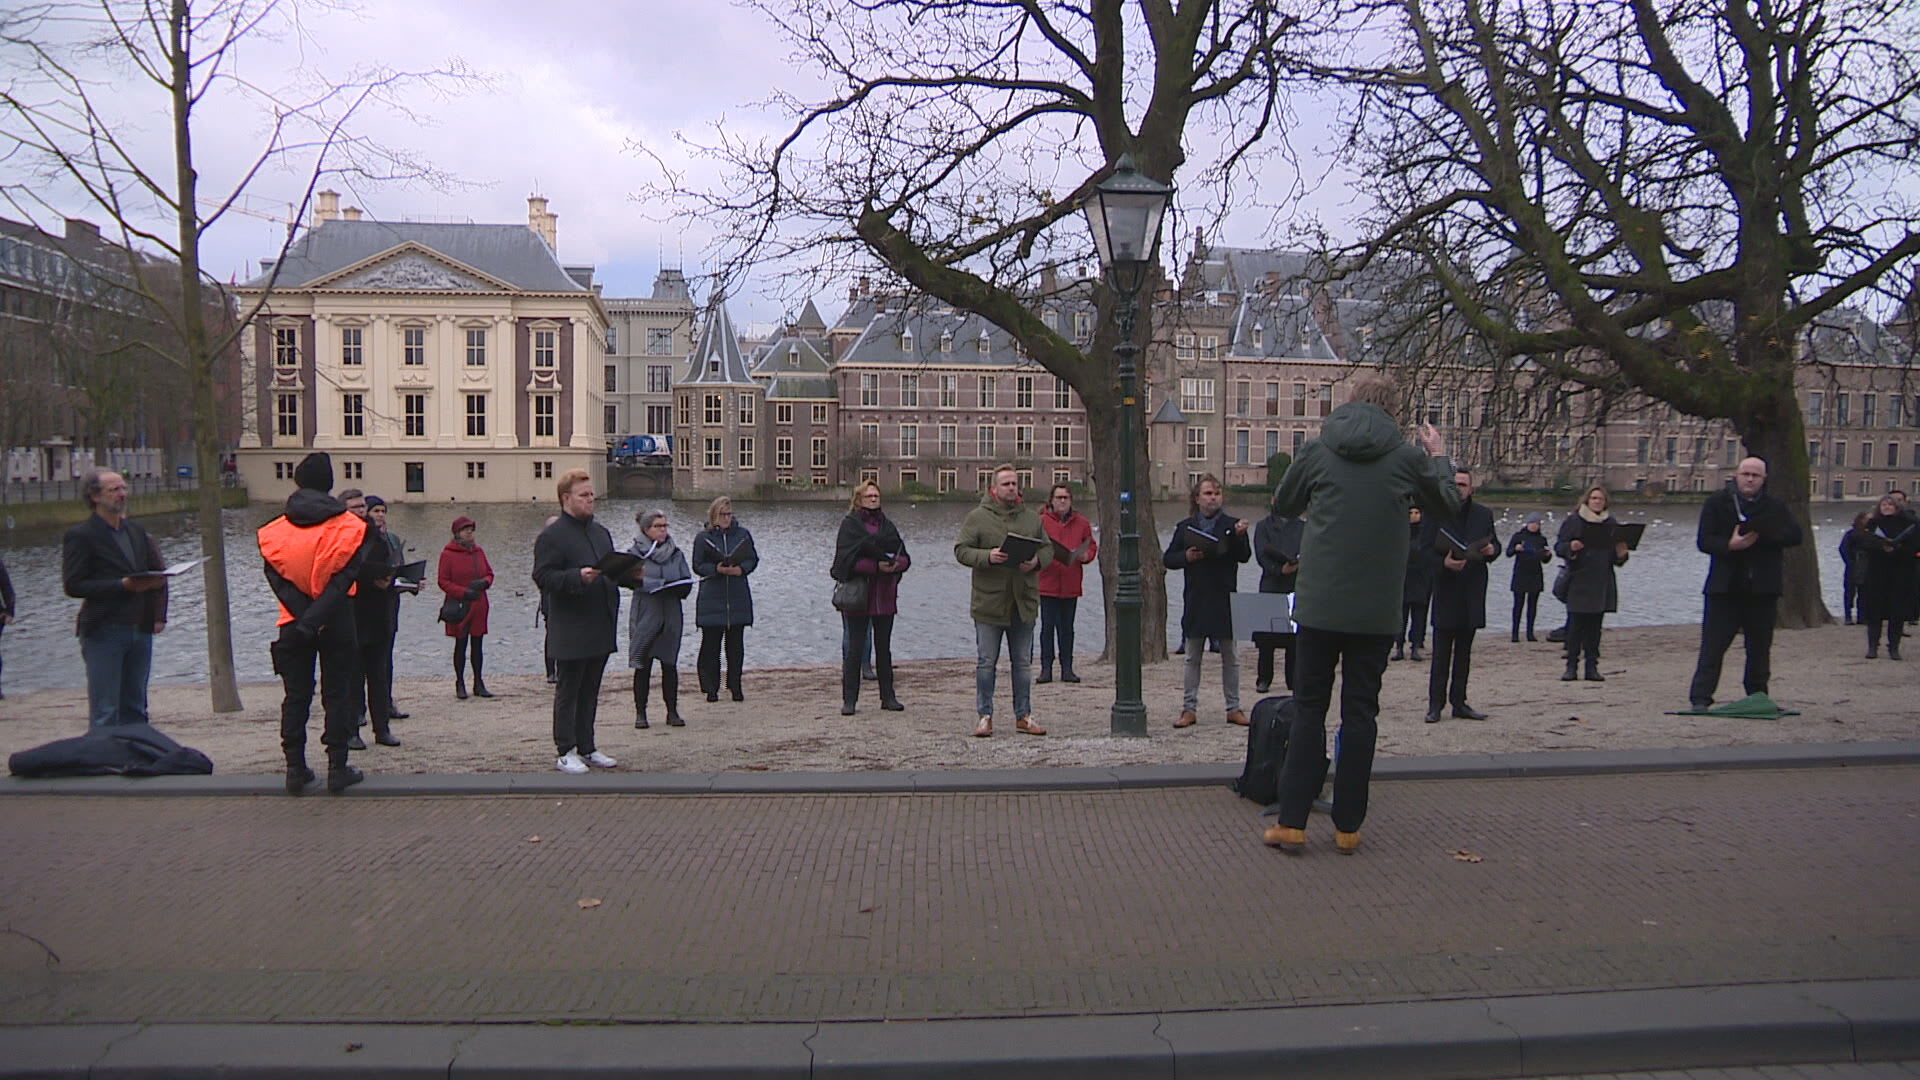 Zangkoren protesteren in Den Haag tegen coronamaatregel: 'Hoop dat kabinet zich baseert op juiste cijfers'